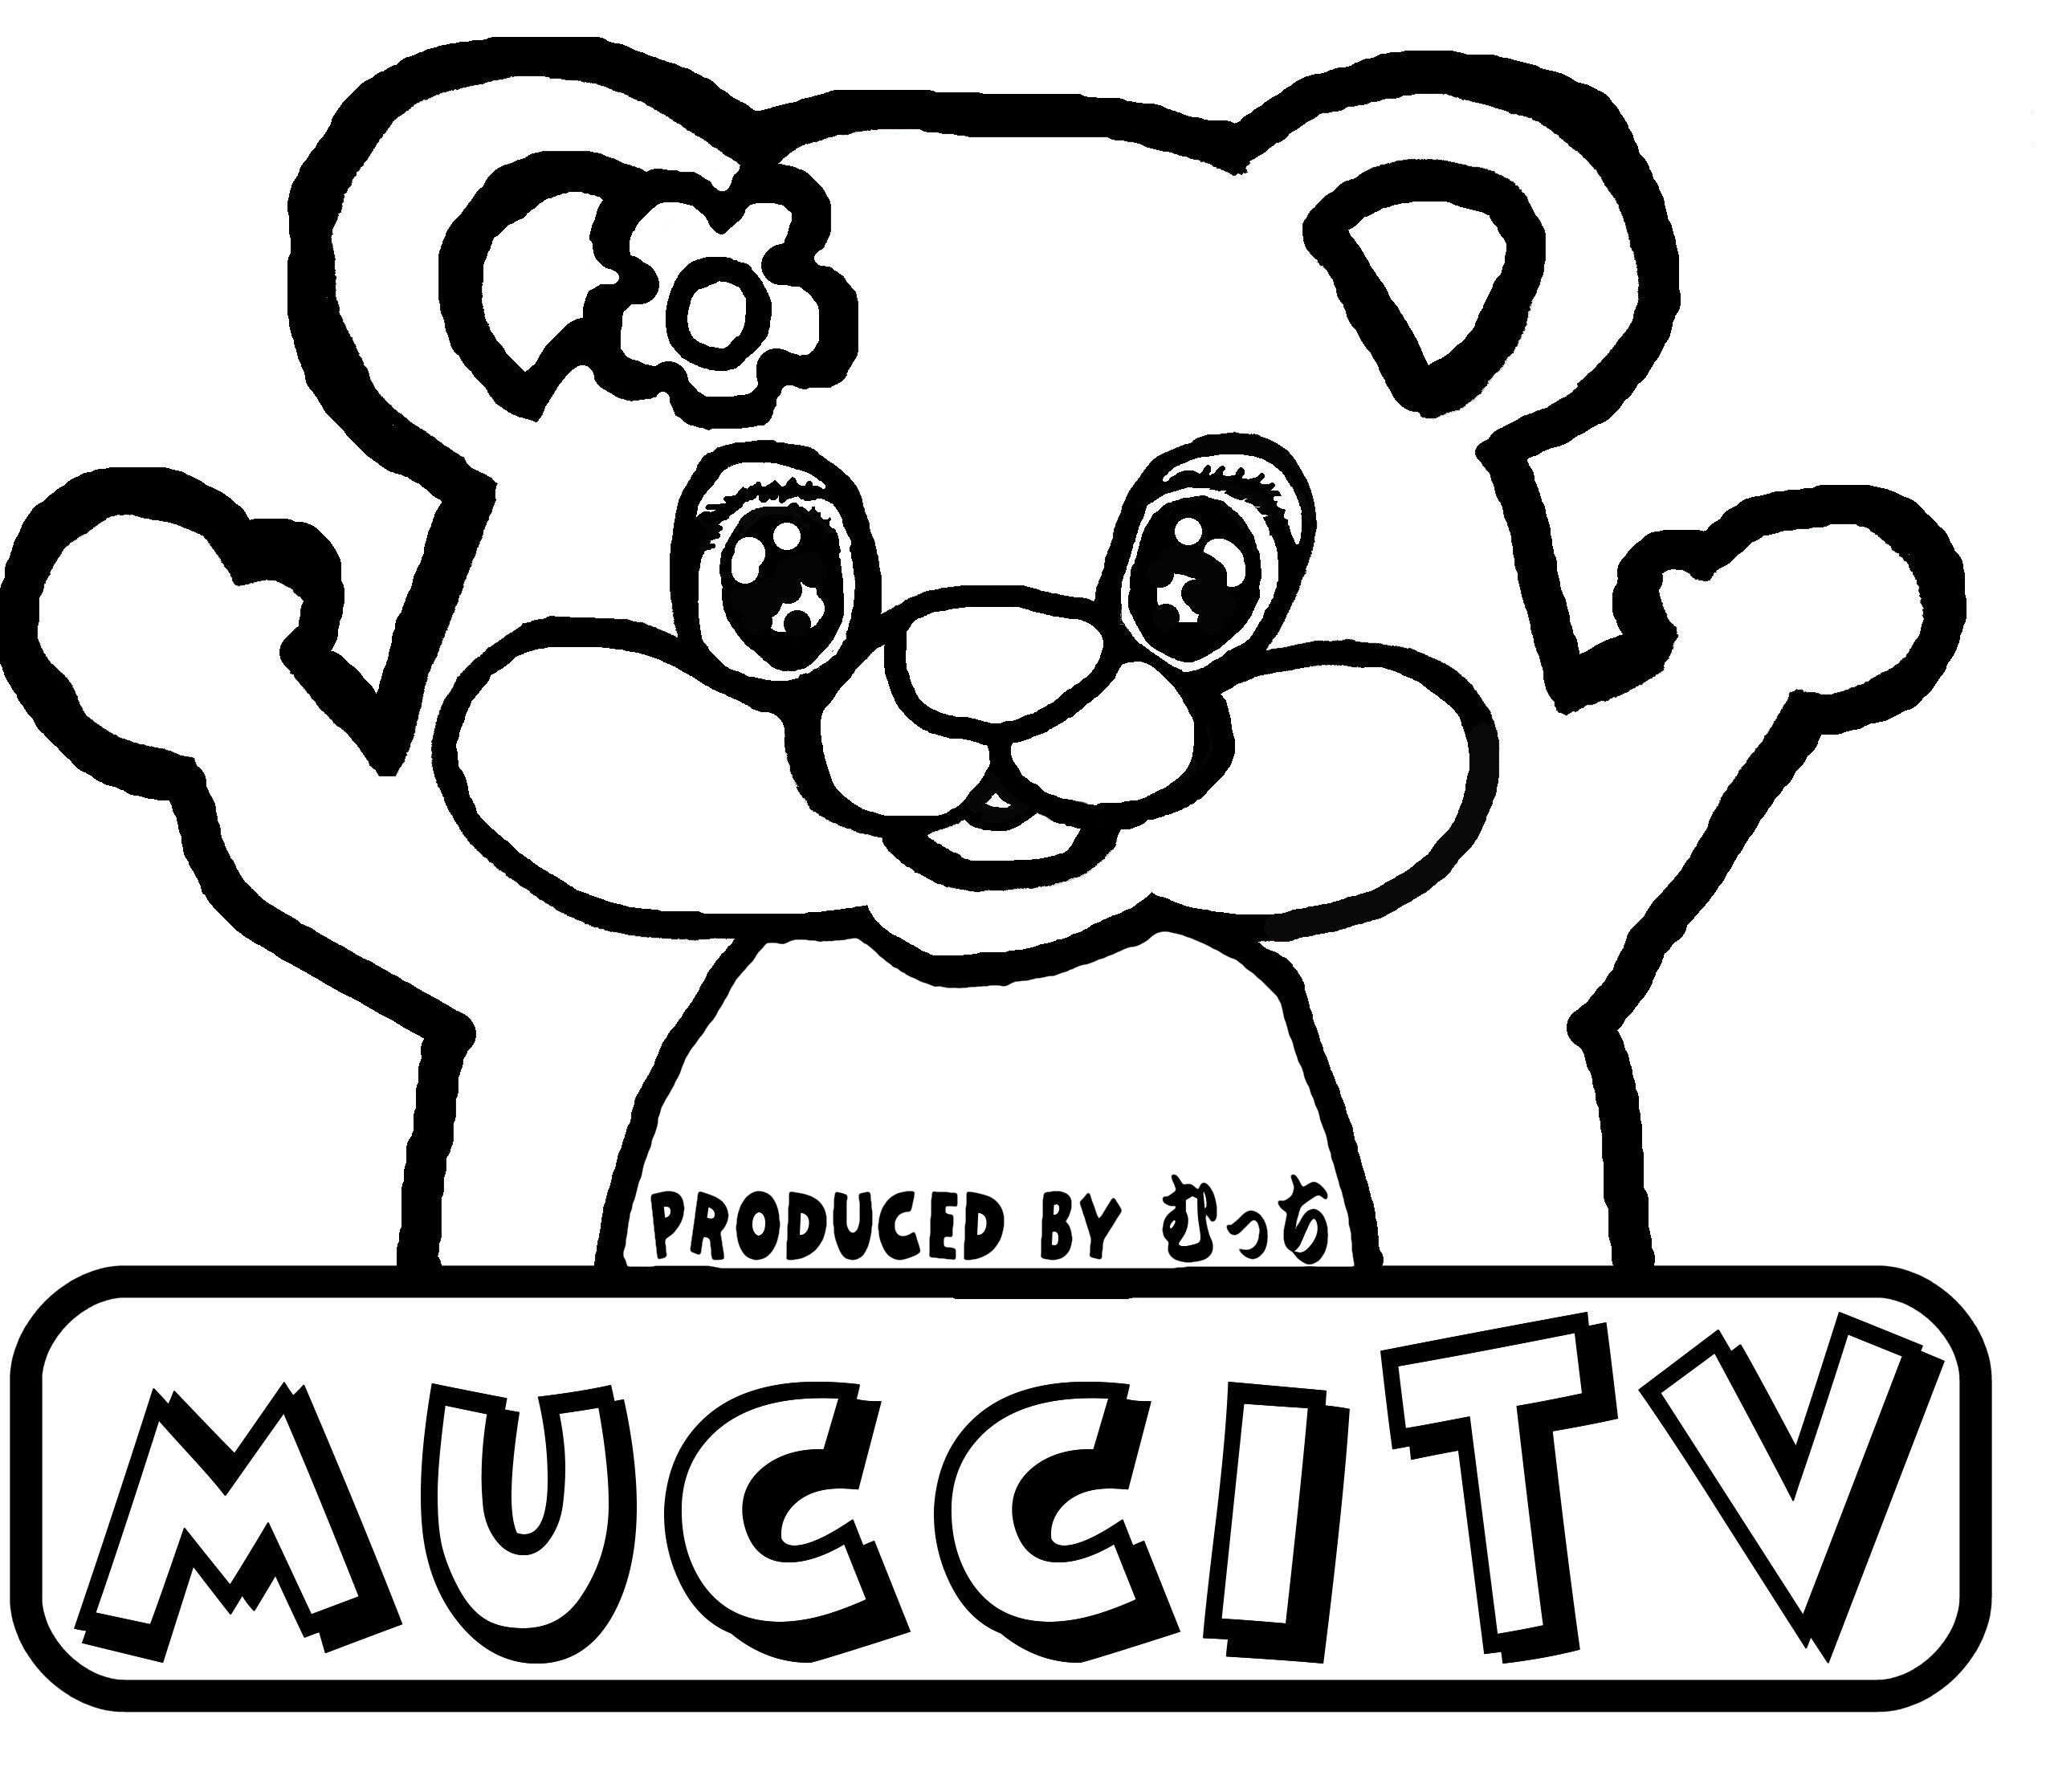 mucciTVデザインYouTubeチャンネルmucciTV内でmucciが着ているデザインと同じもの。